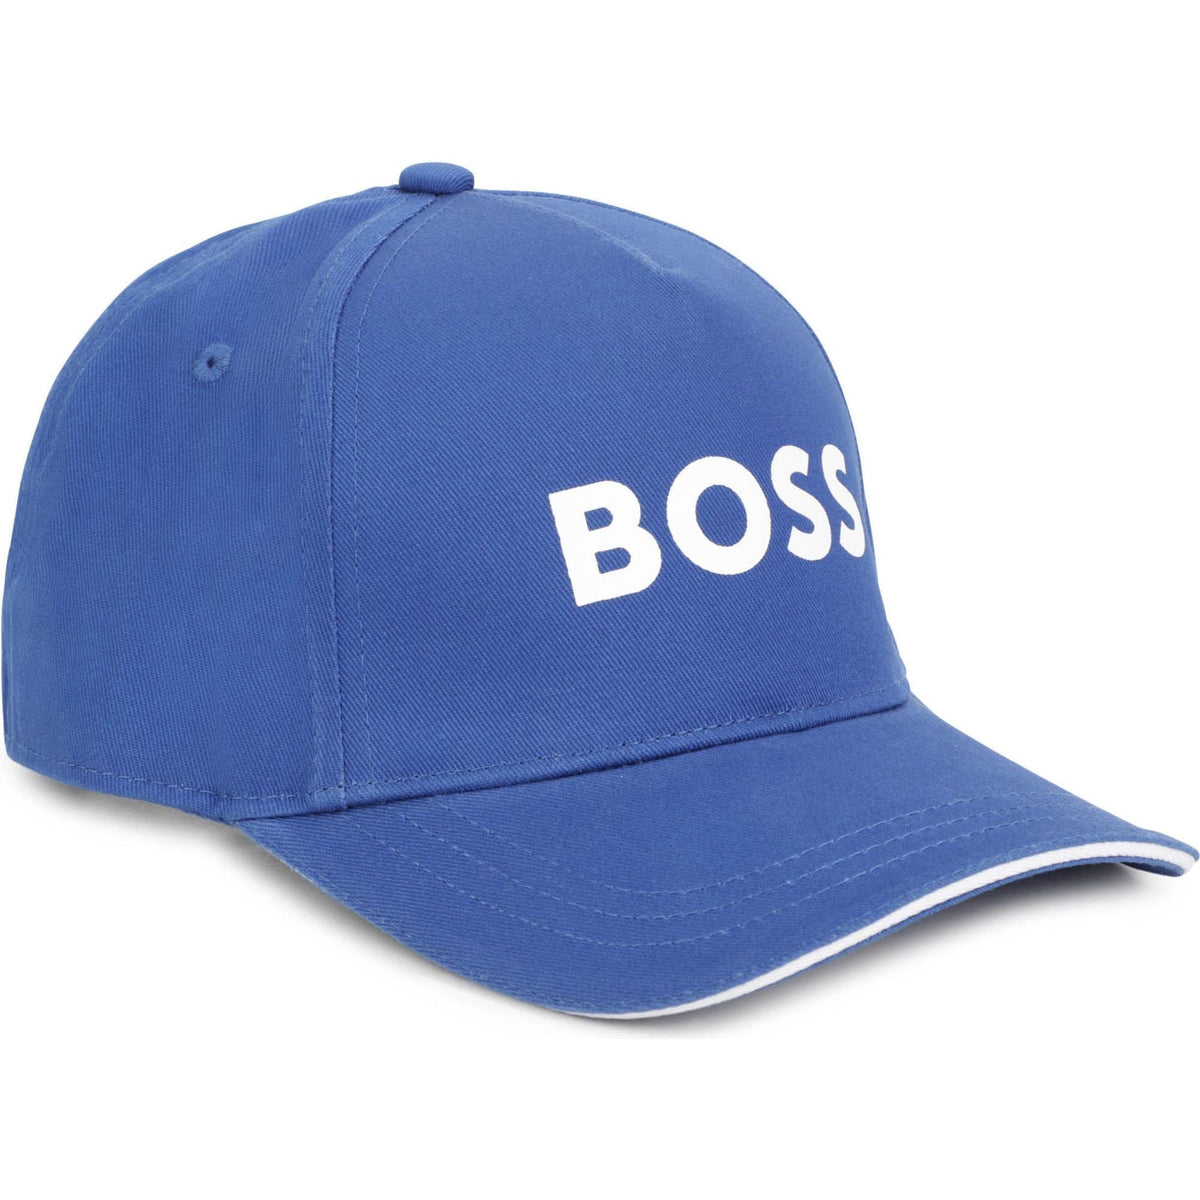 Boss Cotton Cap - Pale Blue